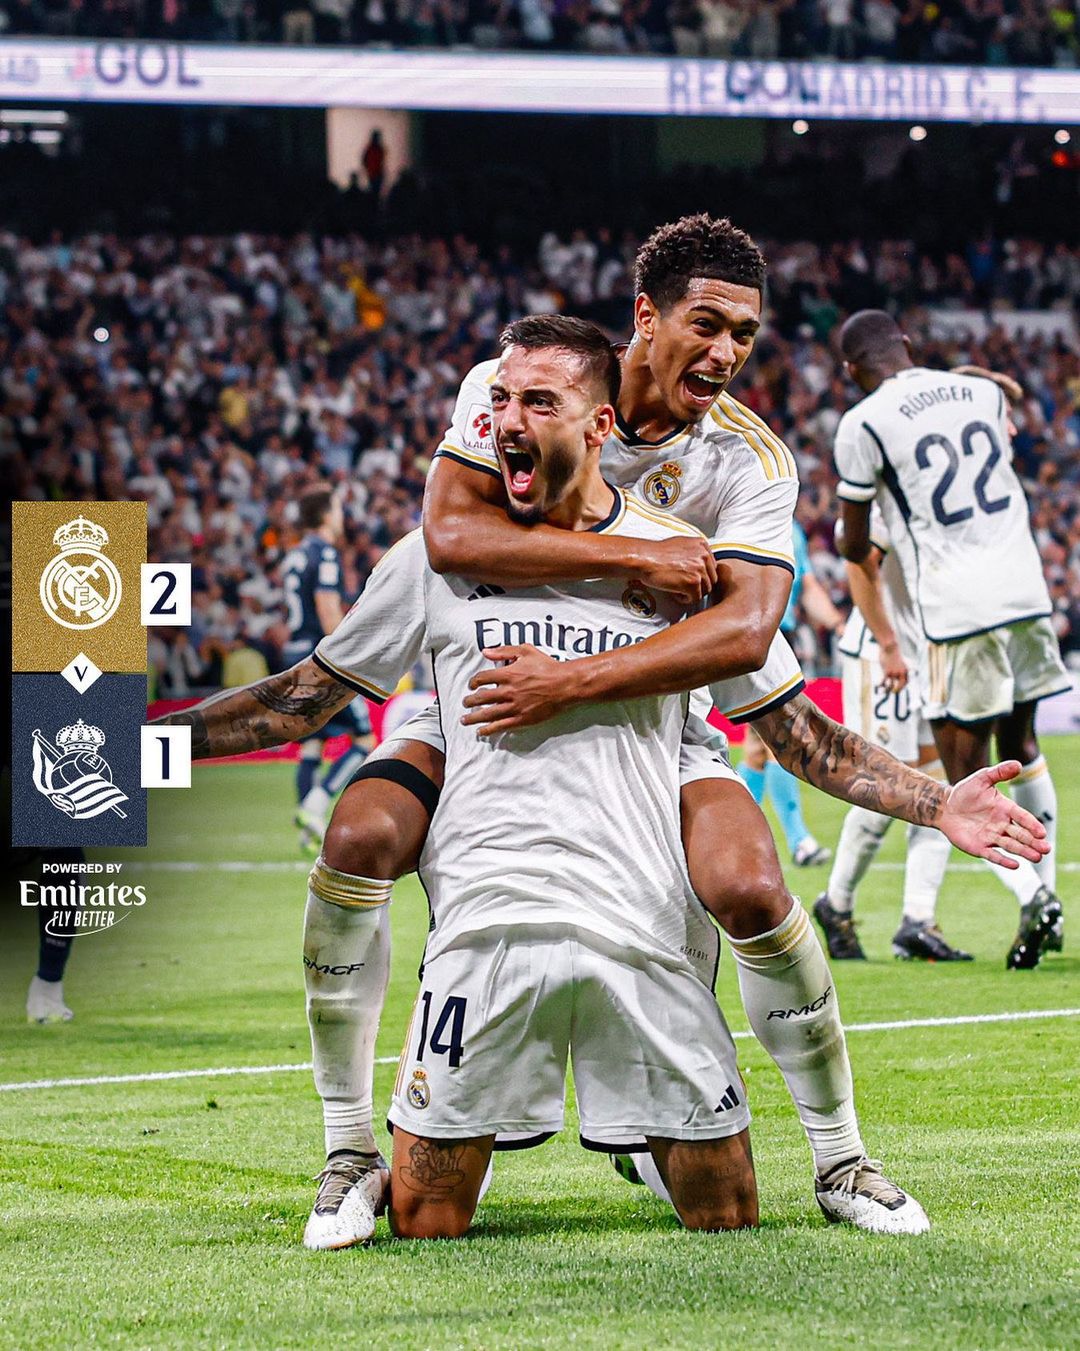 Kalahkan Real Sociedad dengan Skor 2-1, Real Madrid Berhasil Amankan Posisi Puncak Klasemen